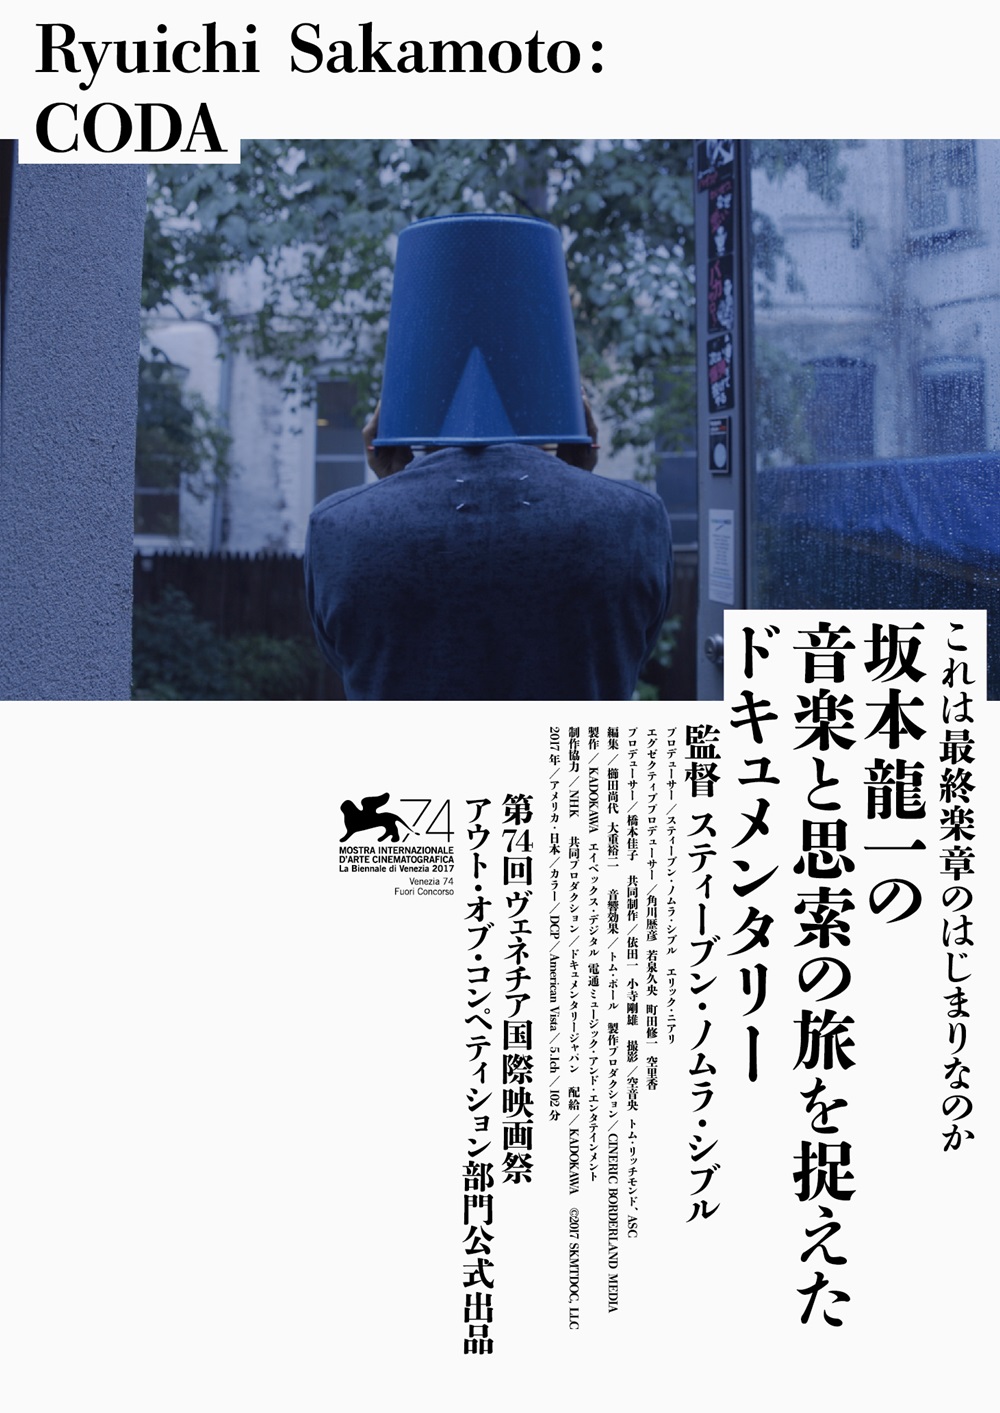 【画像】映画『Ryuichi Sakamoto: CODA』